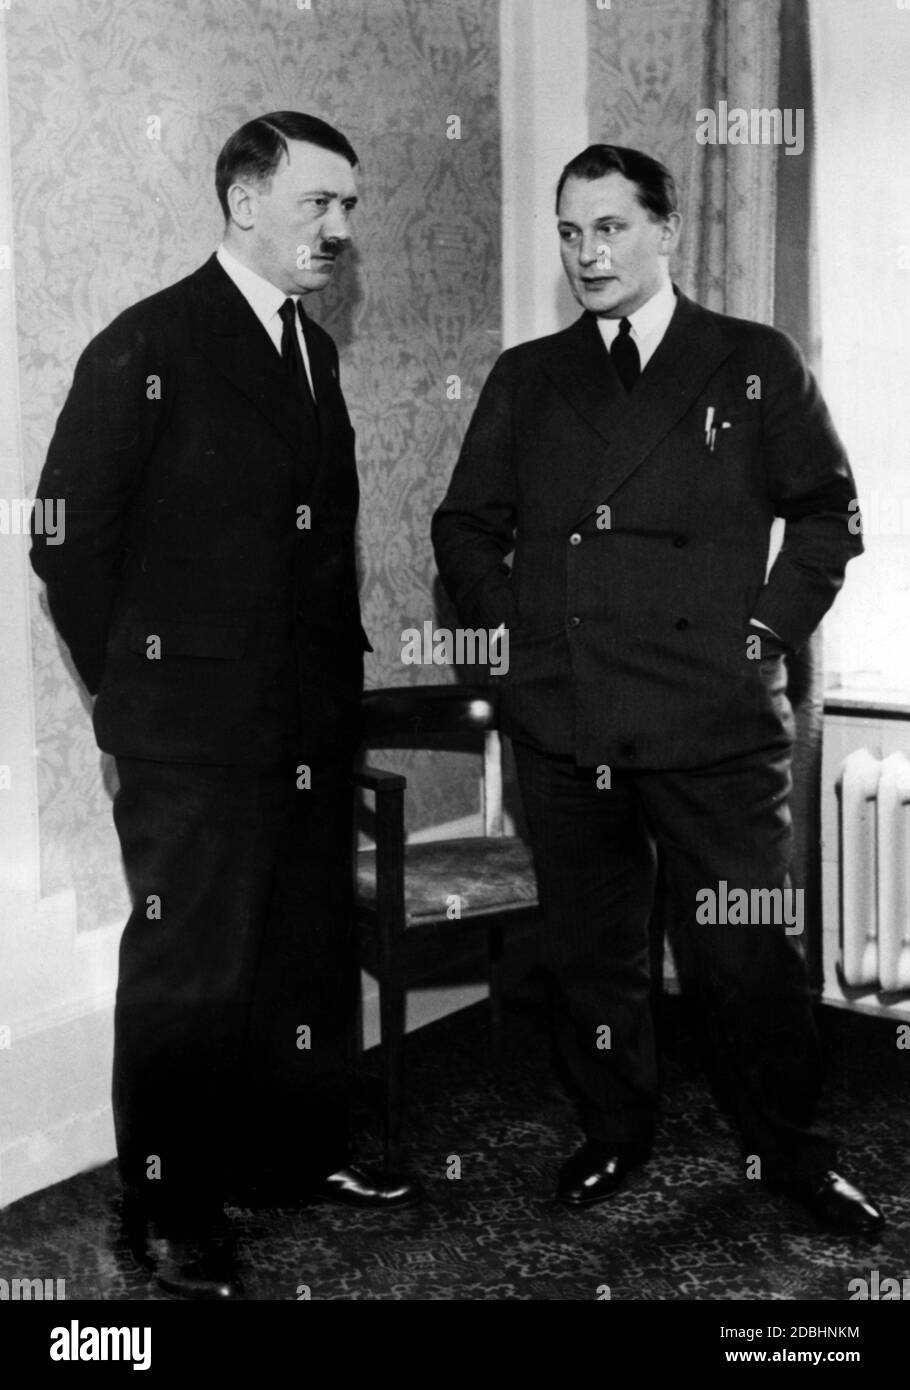 Adolf Hitler erwartet zusammen mit Hermann Göring eine Delegation ausländischer Journalisten im Kaiserhof Hotel in Berlin, die er über seine außenpolitischen Positionen informierte. Stockfoto